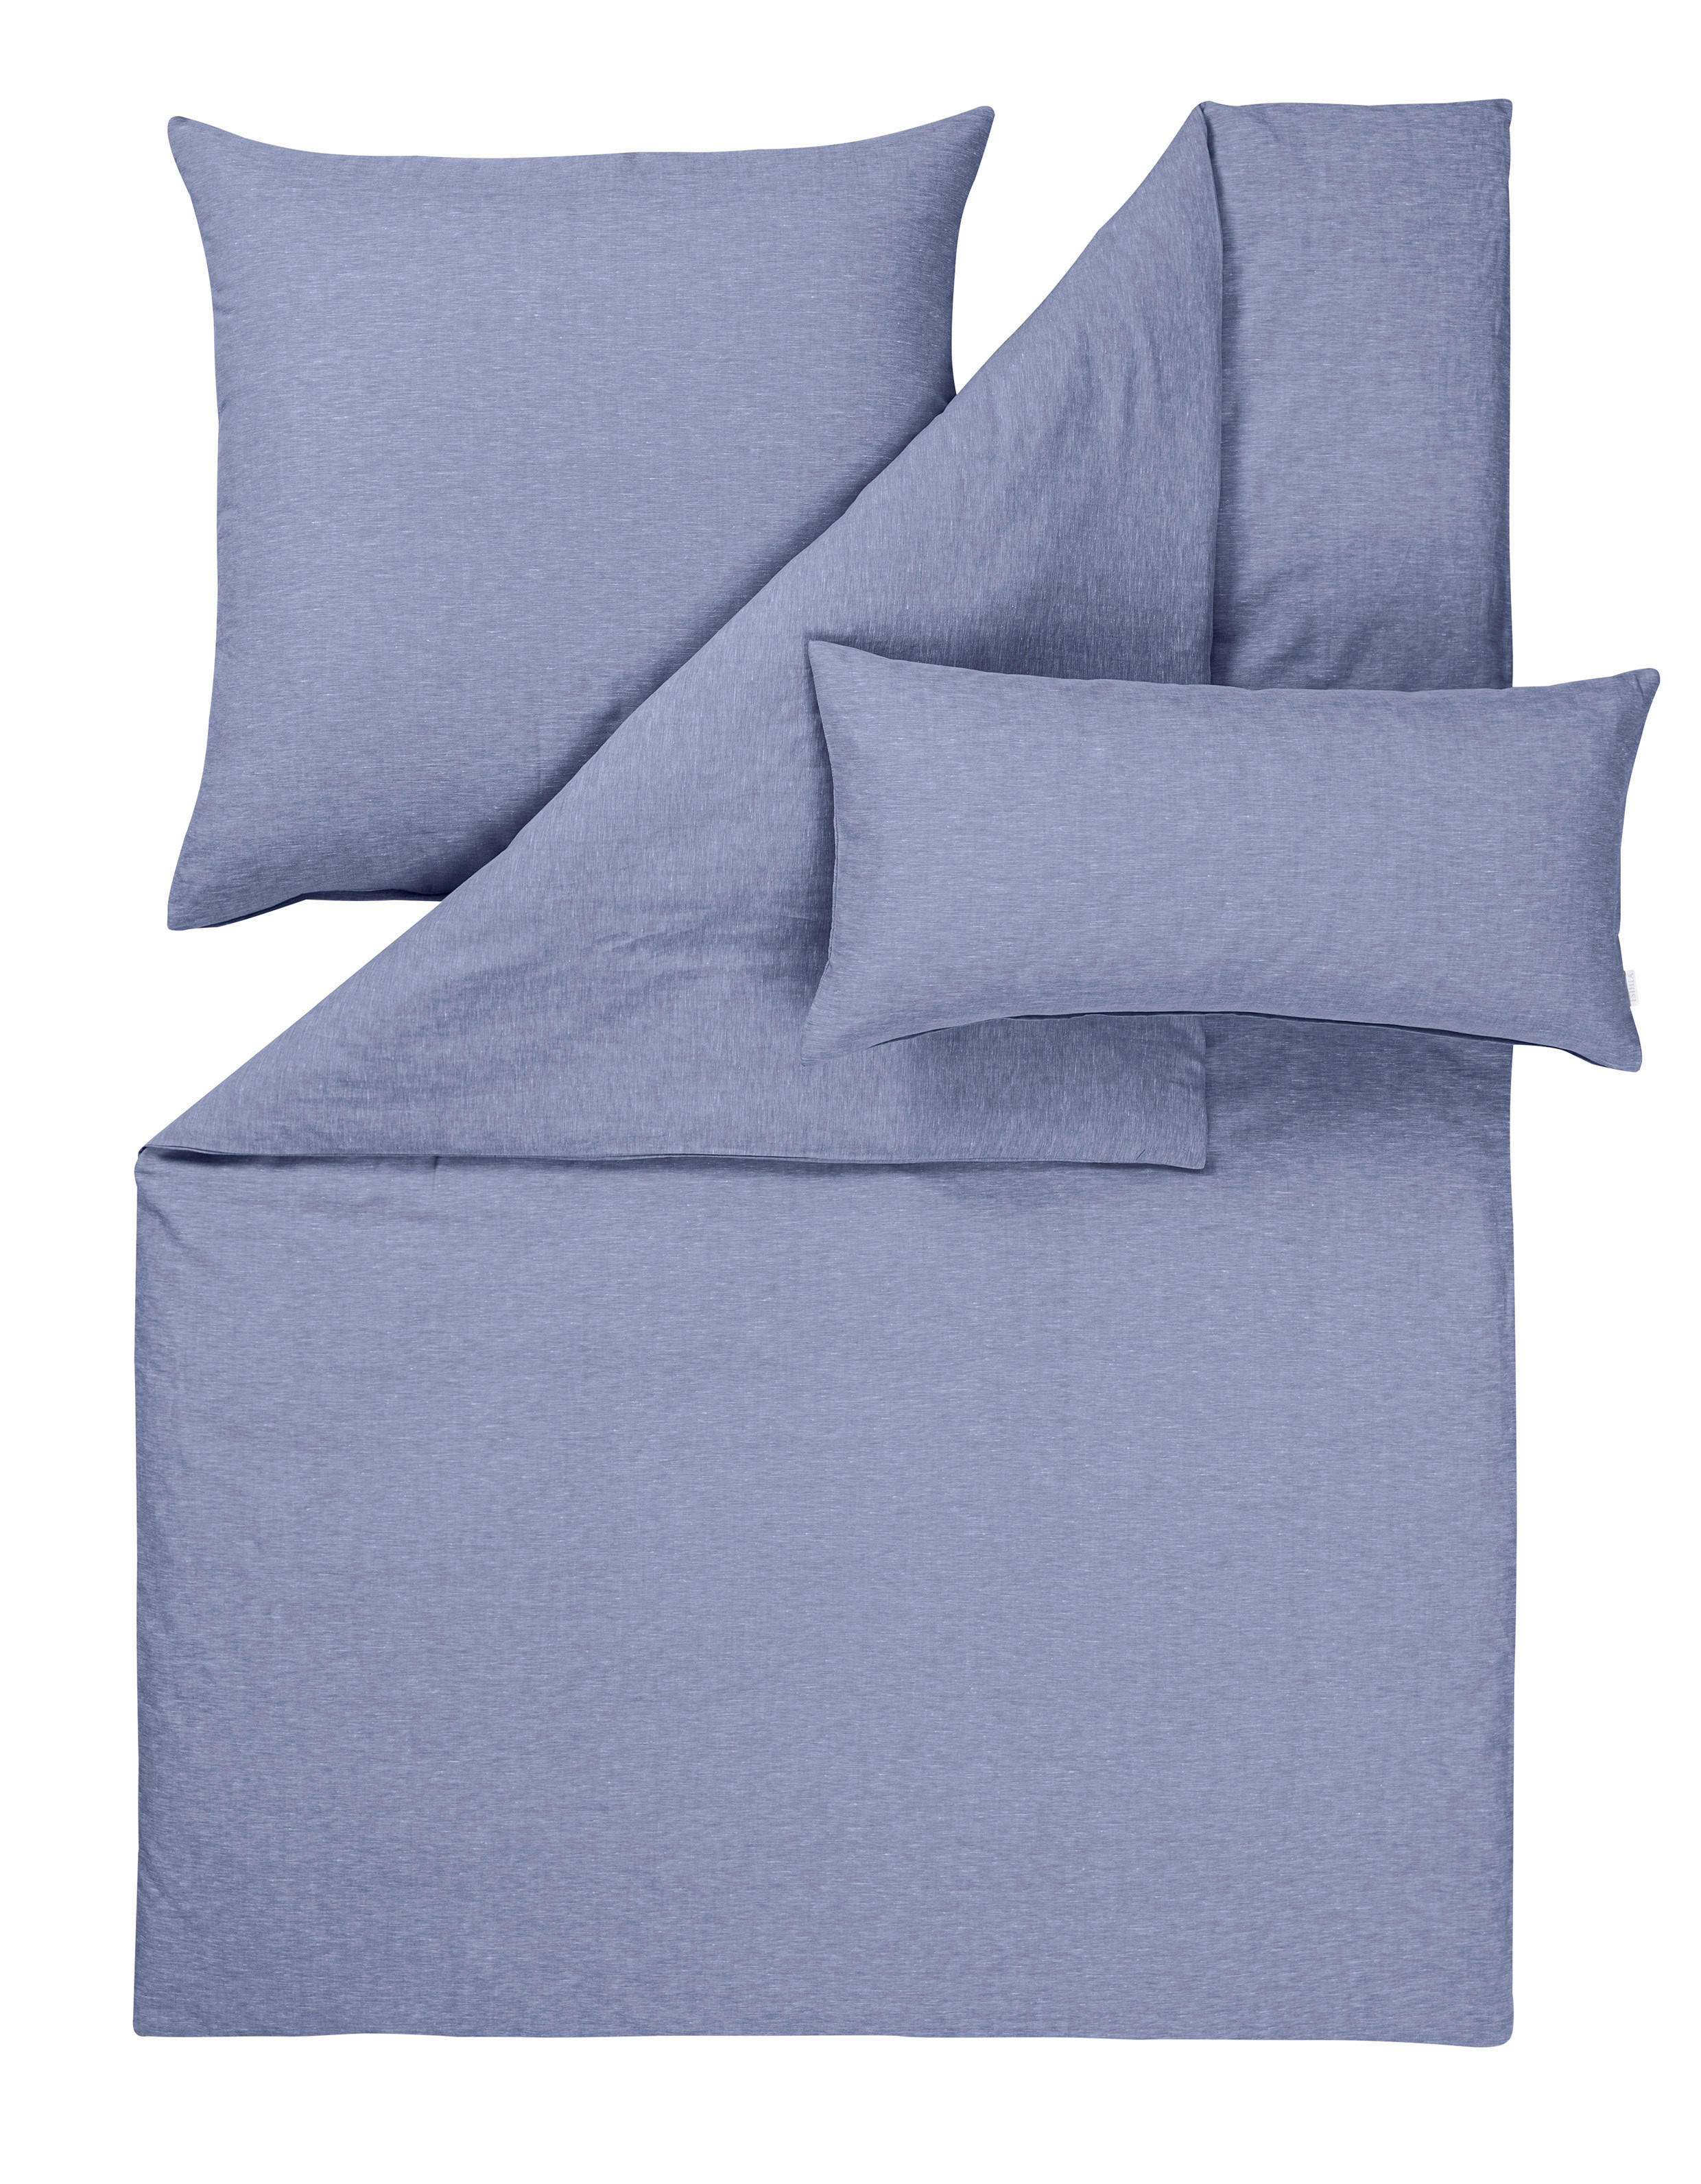 BETTWÄSCHE Leinenoptik  - Blau, Basics, Textil (135/200cm) - Estella